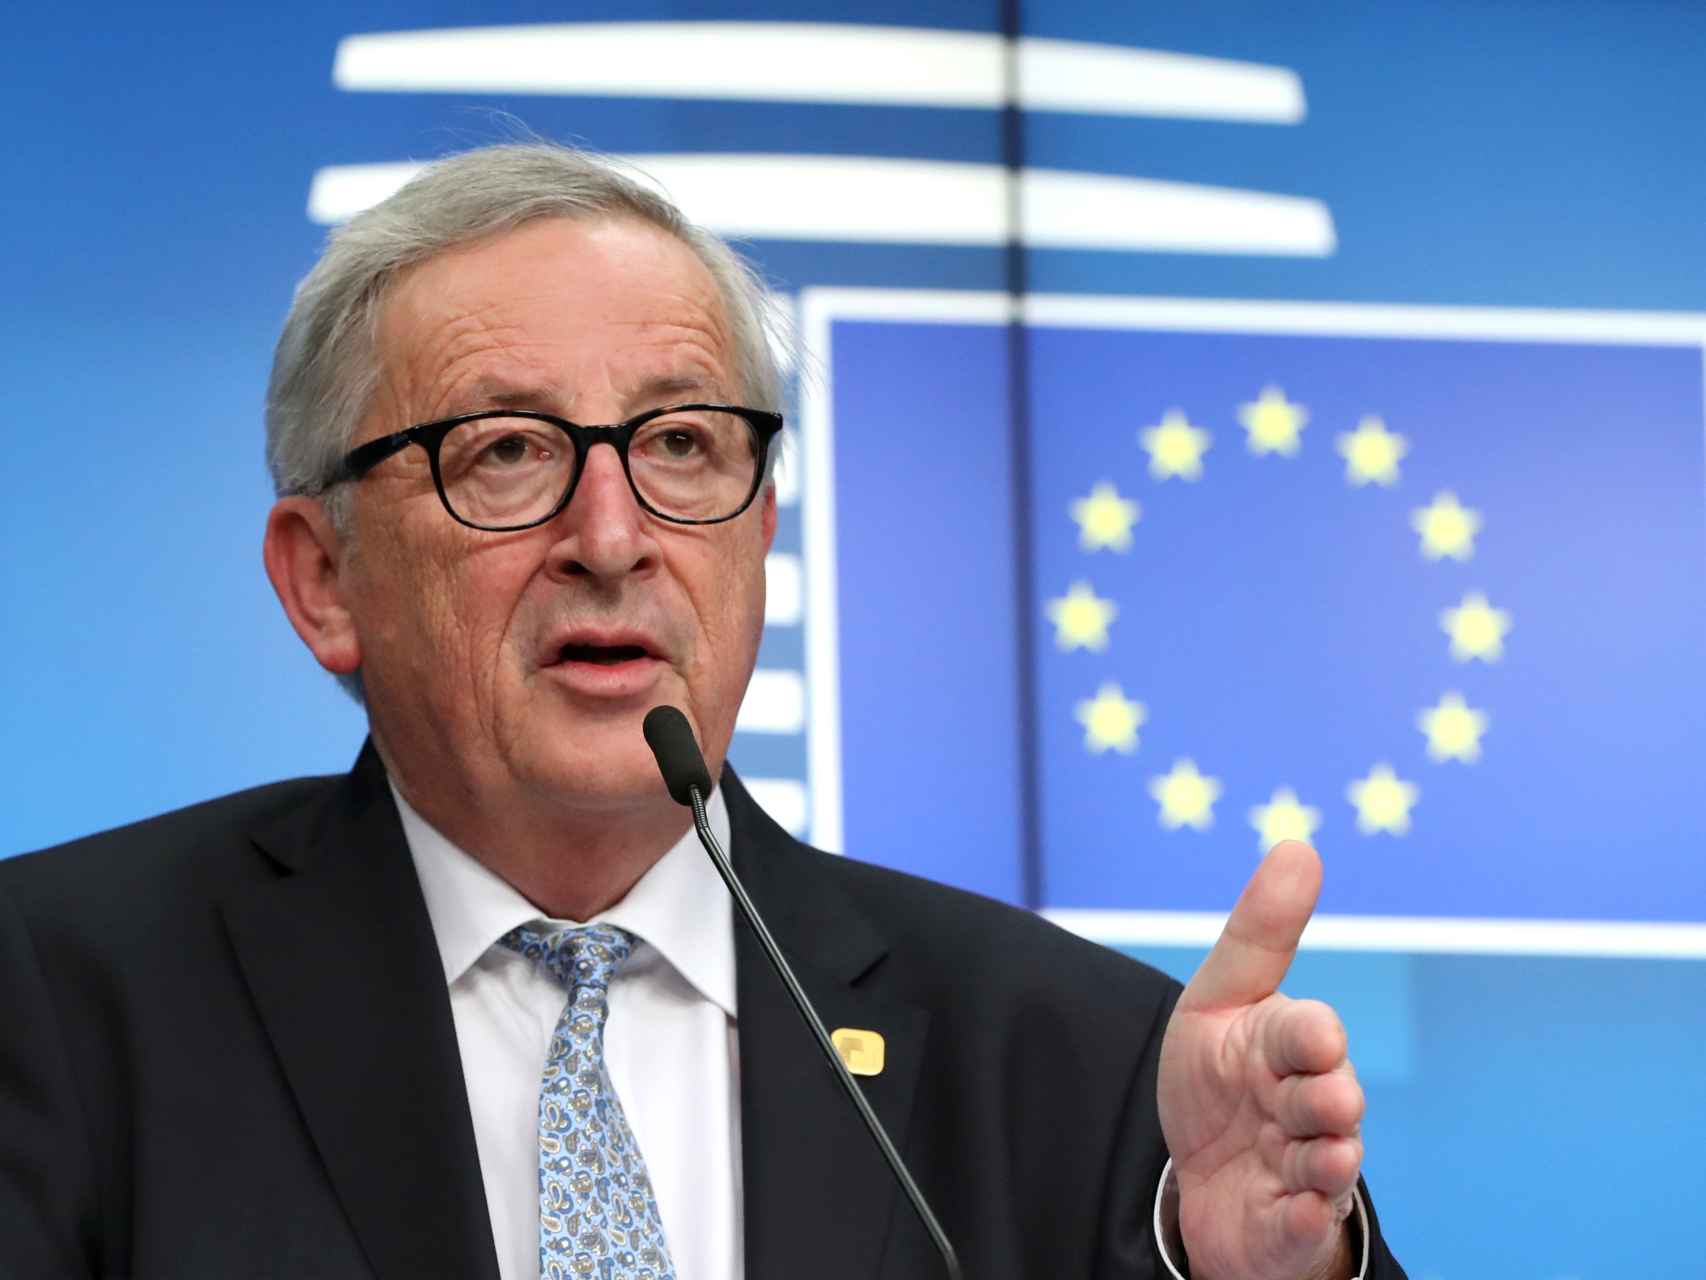 El presidente de la Comisión, Jean-Claude Juncker, presenta su agenda para 2019-2024